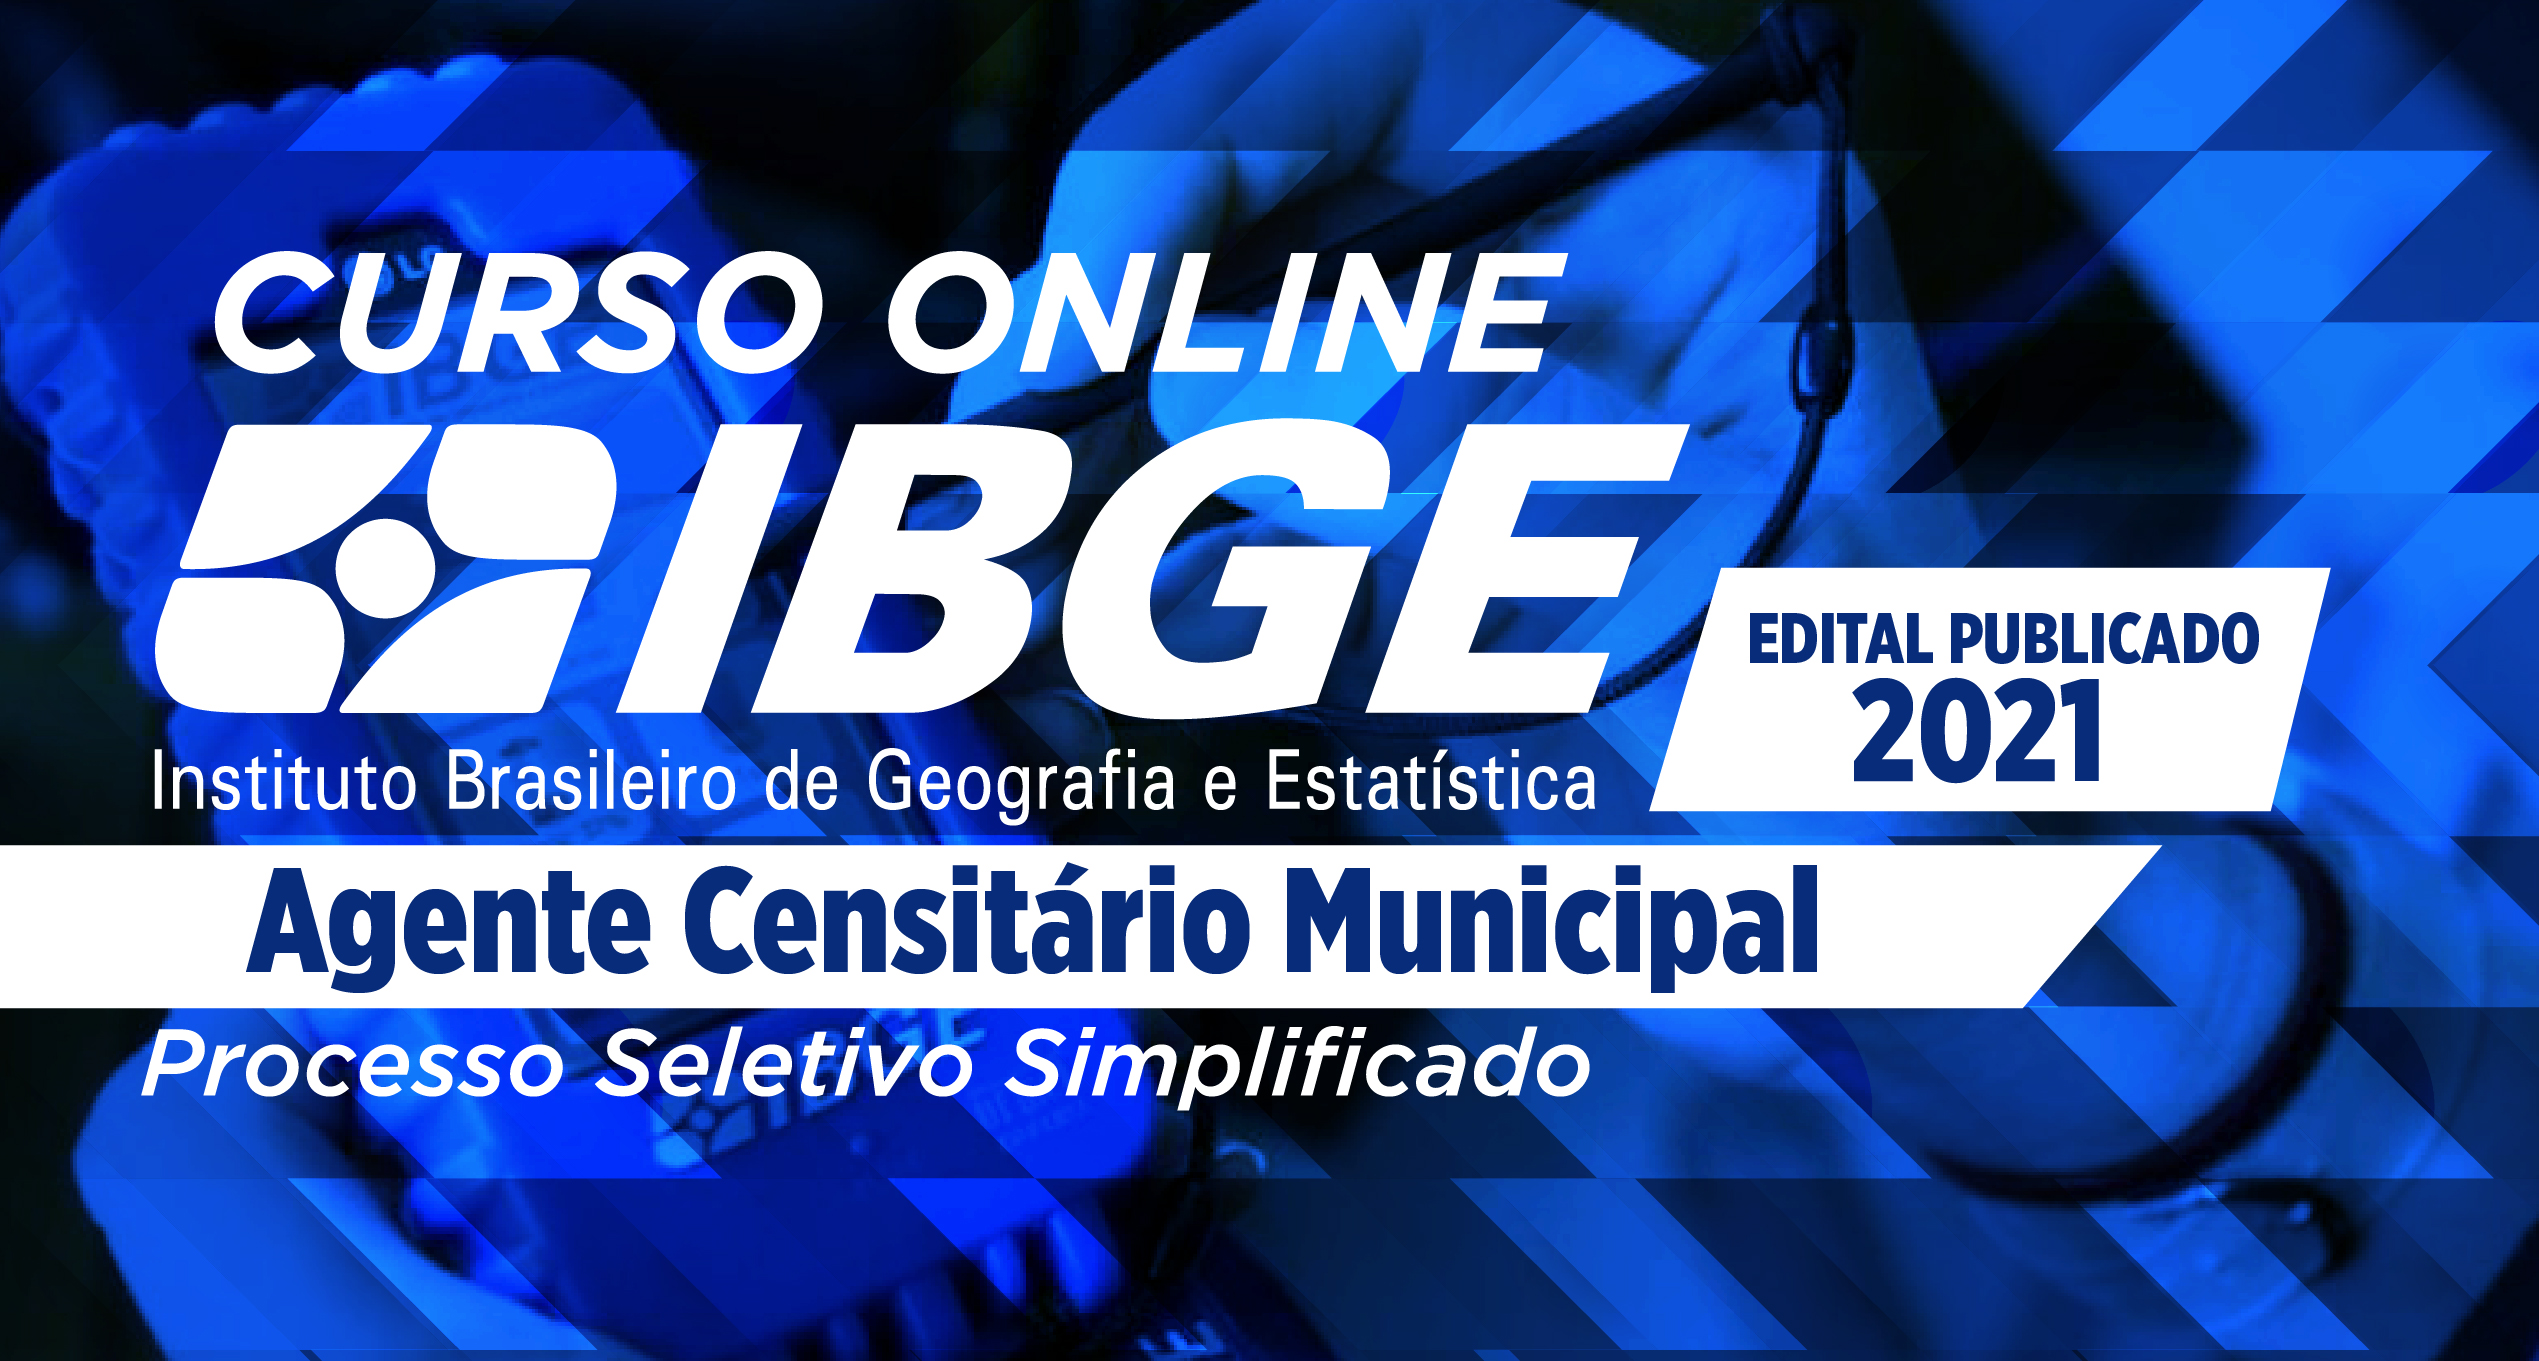 IBGE - Agente Censitário Municipal